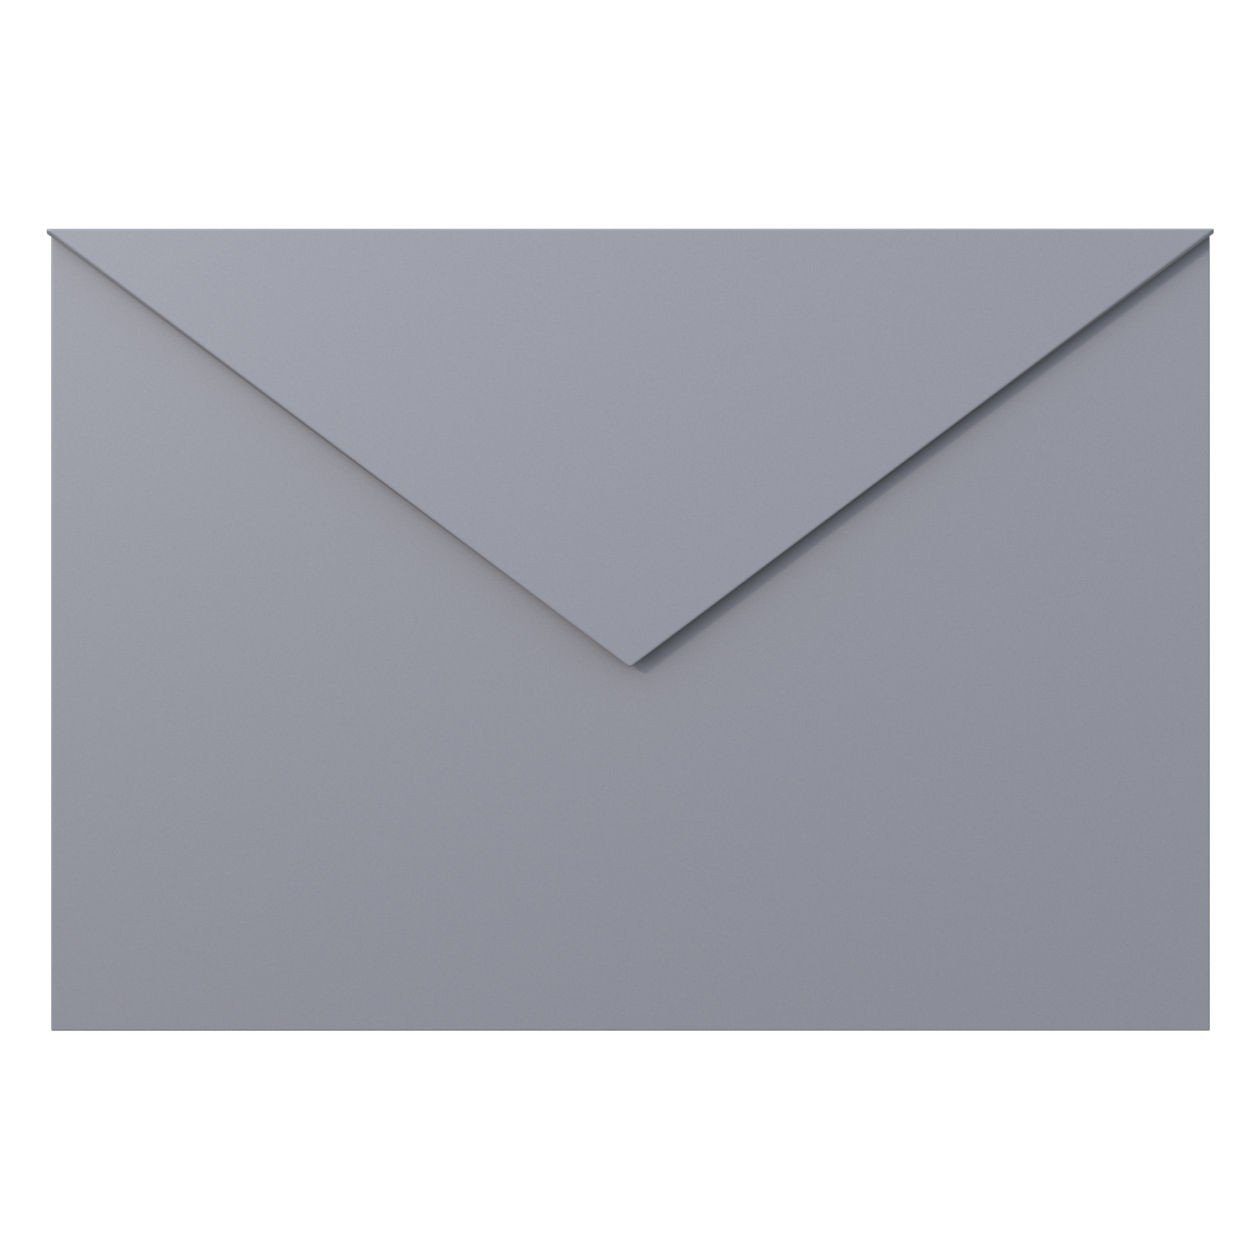 Grau Metallic Briefkasten Letter Briefkasten Bravios